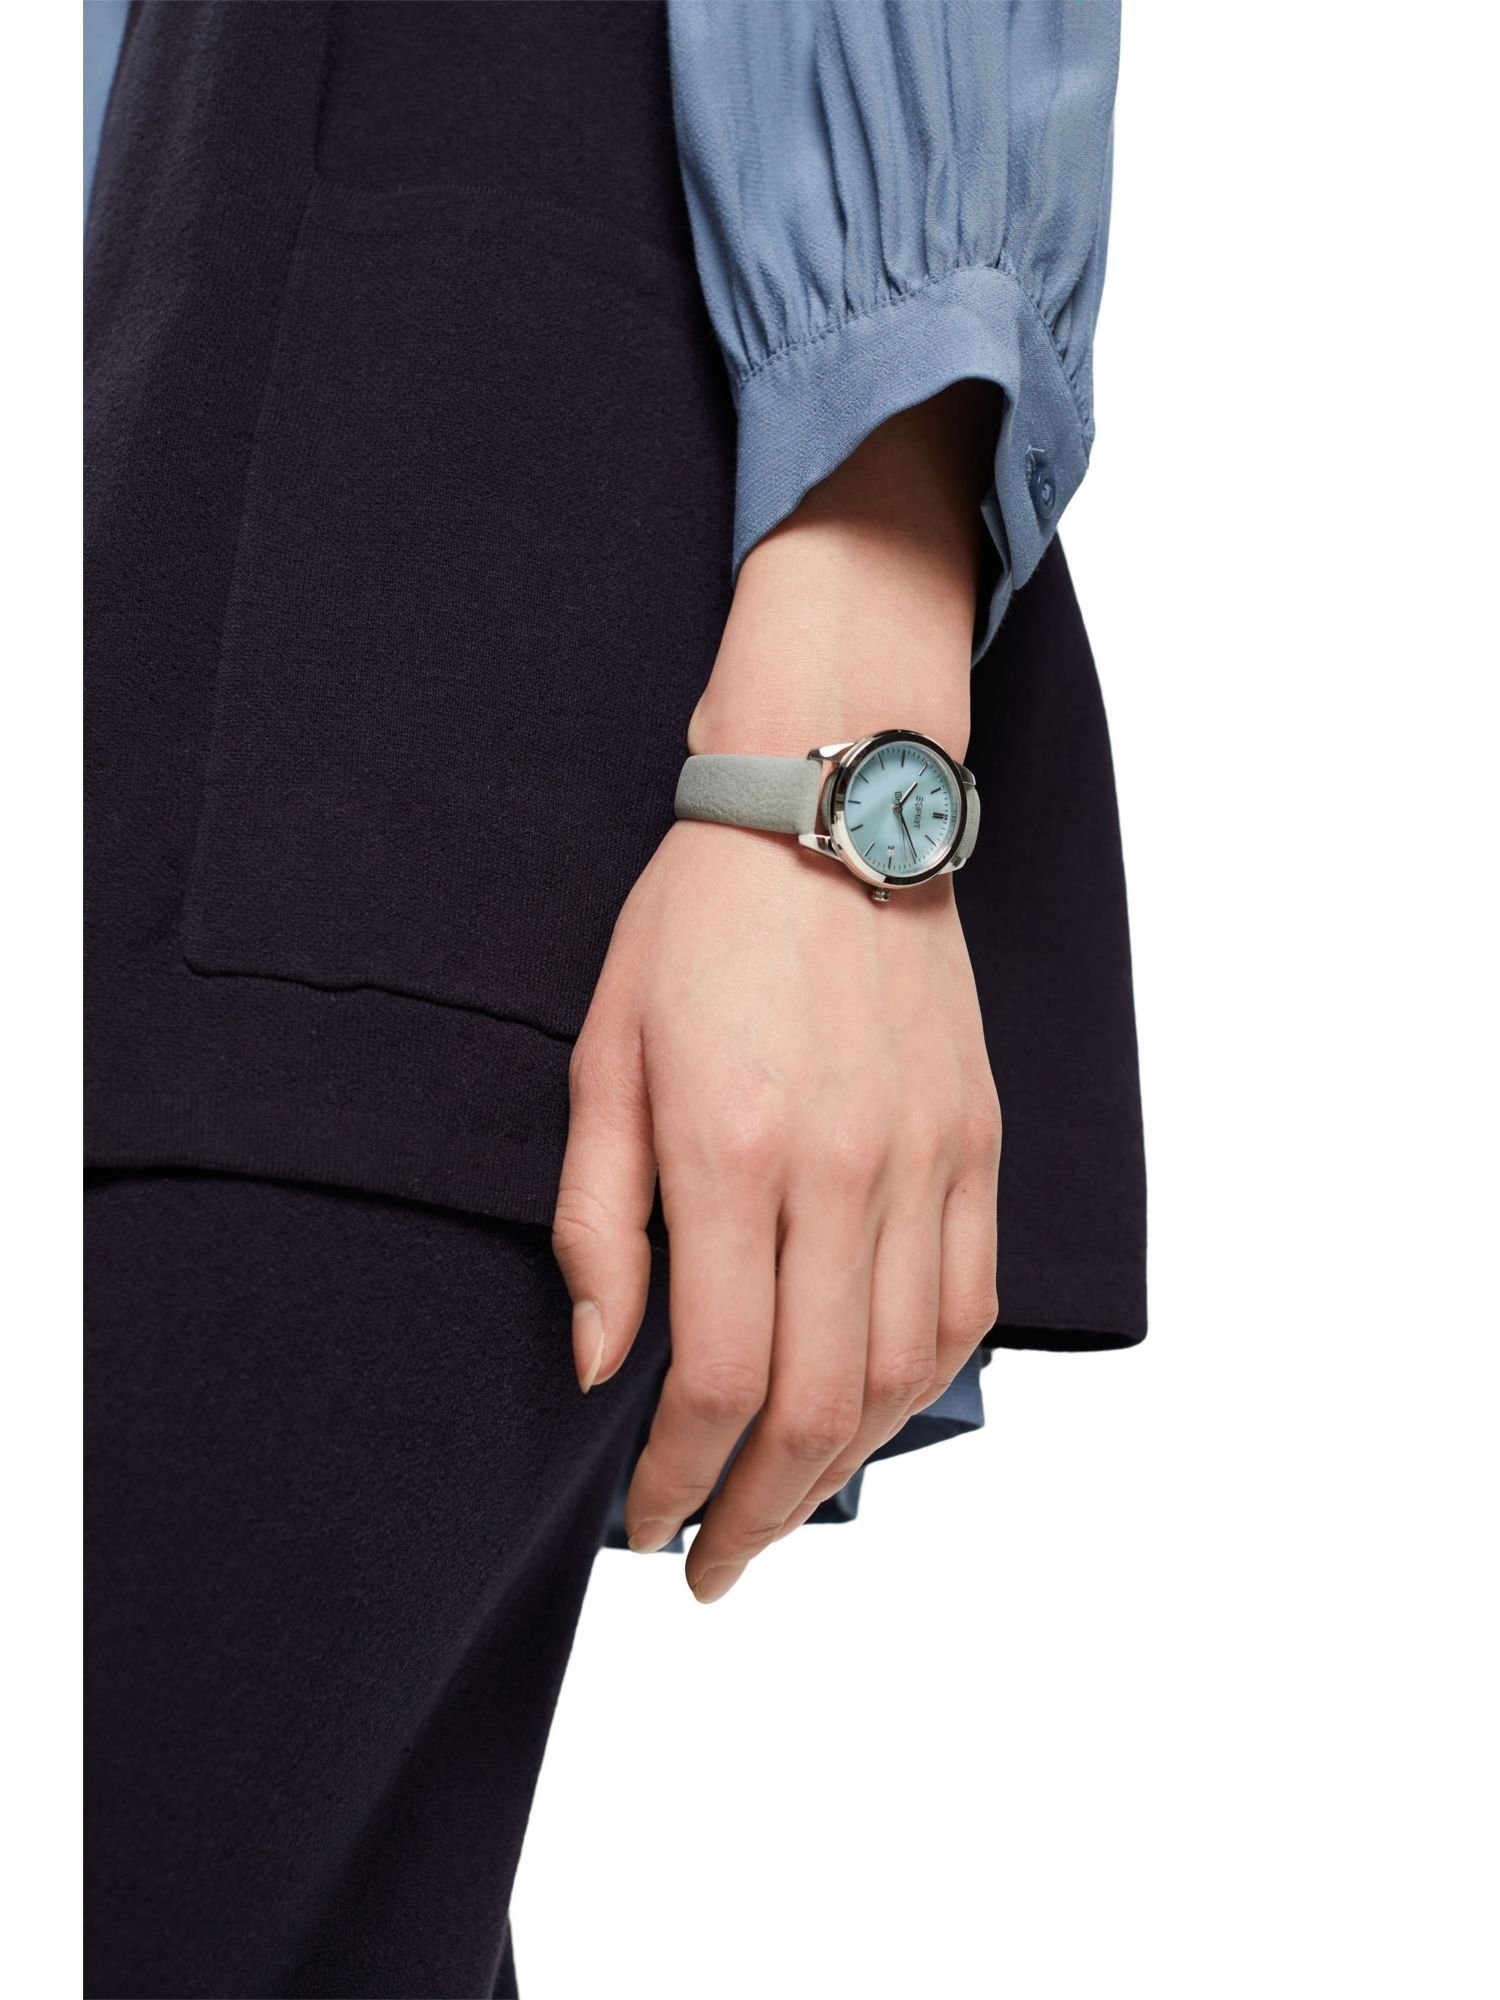 Damen Uhren Esprit Quarzuhr Edelstahl-Uhr mit Armband in Lederoptik